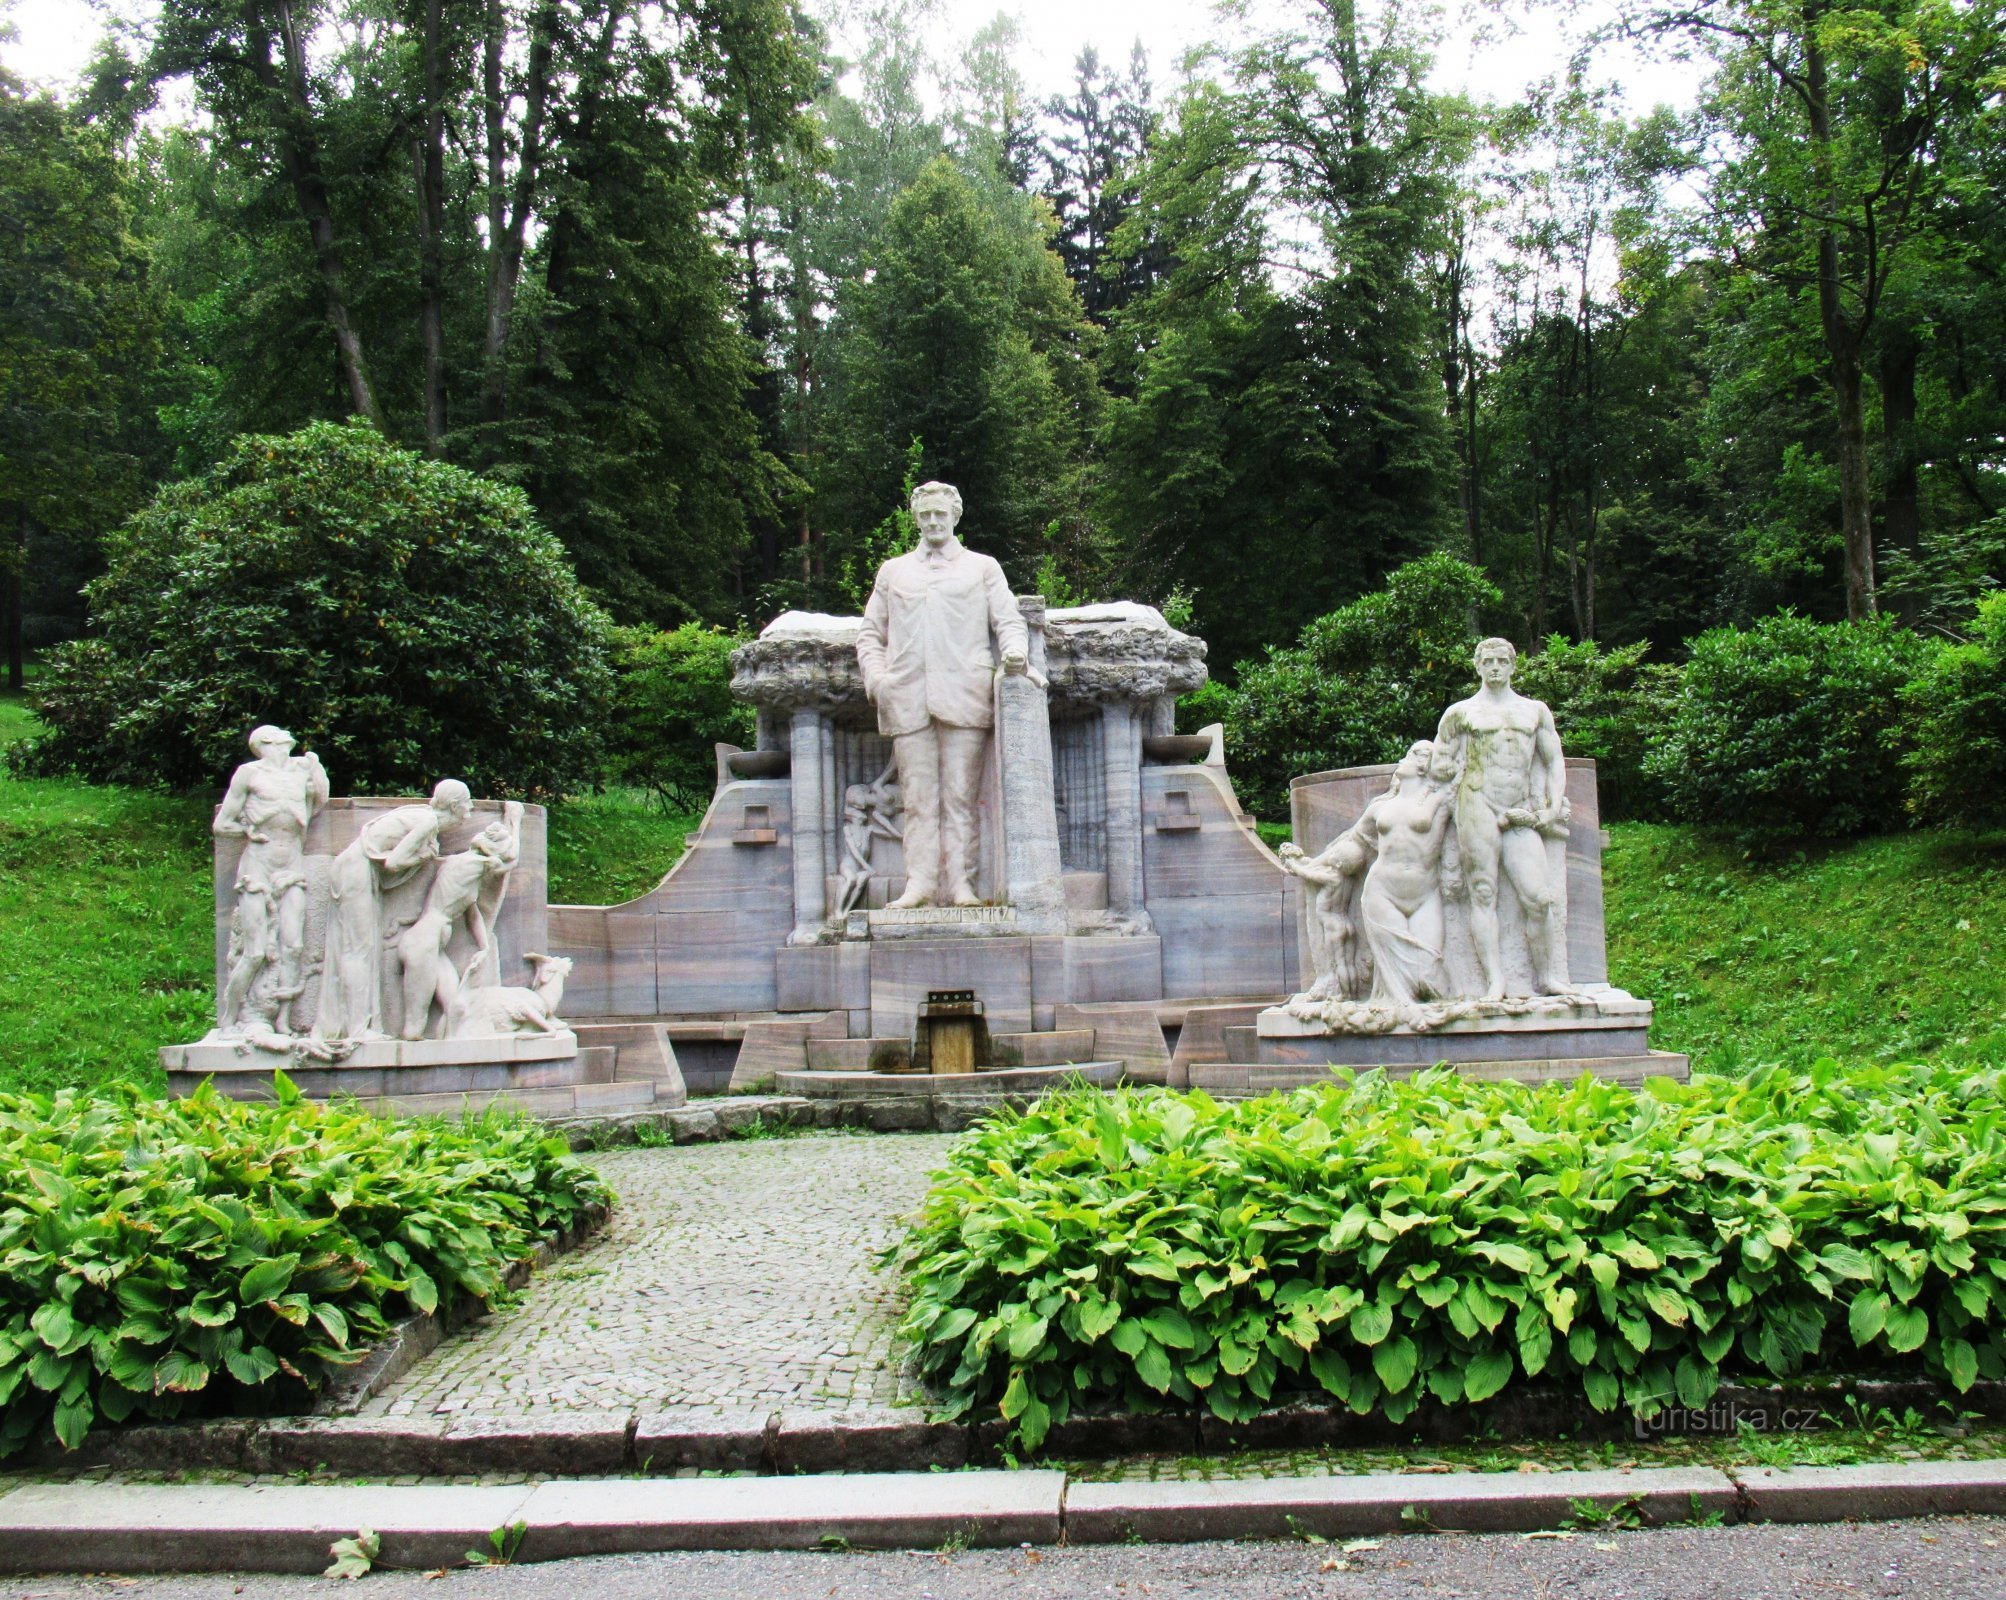 Priessnitzův pomník